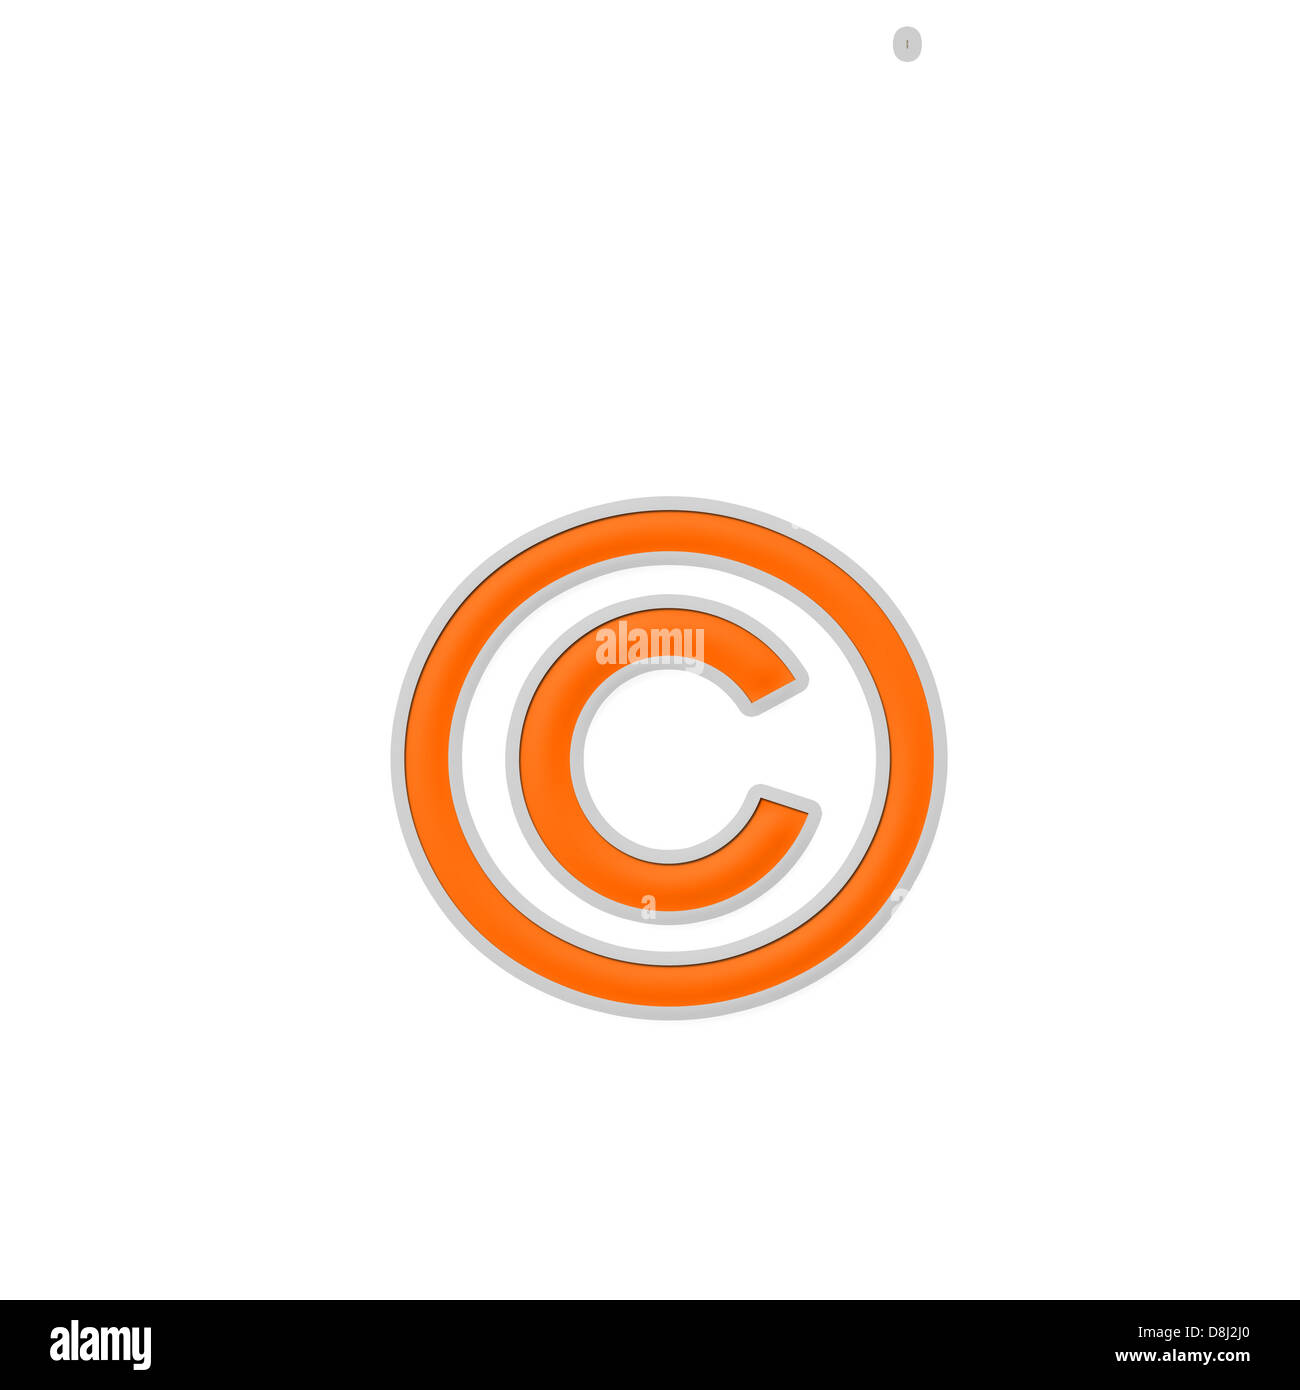 Se utiliza el símbolo de copyright en el aviso de derechos de autor para otras obras, además de la grabación de sonido Foto de stock